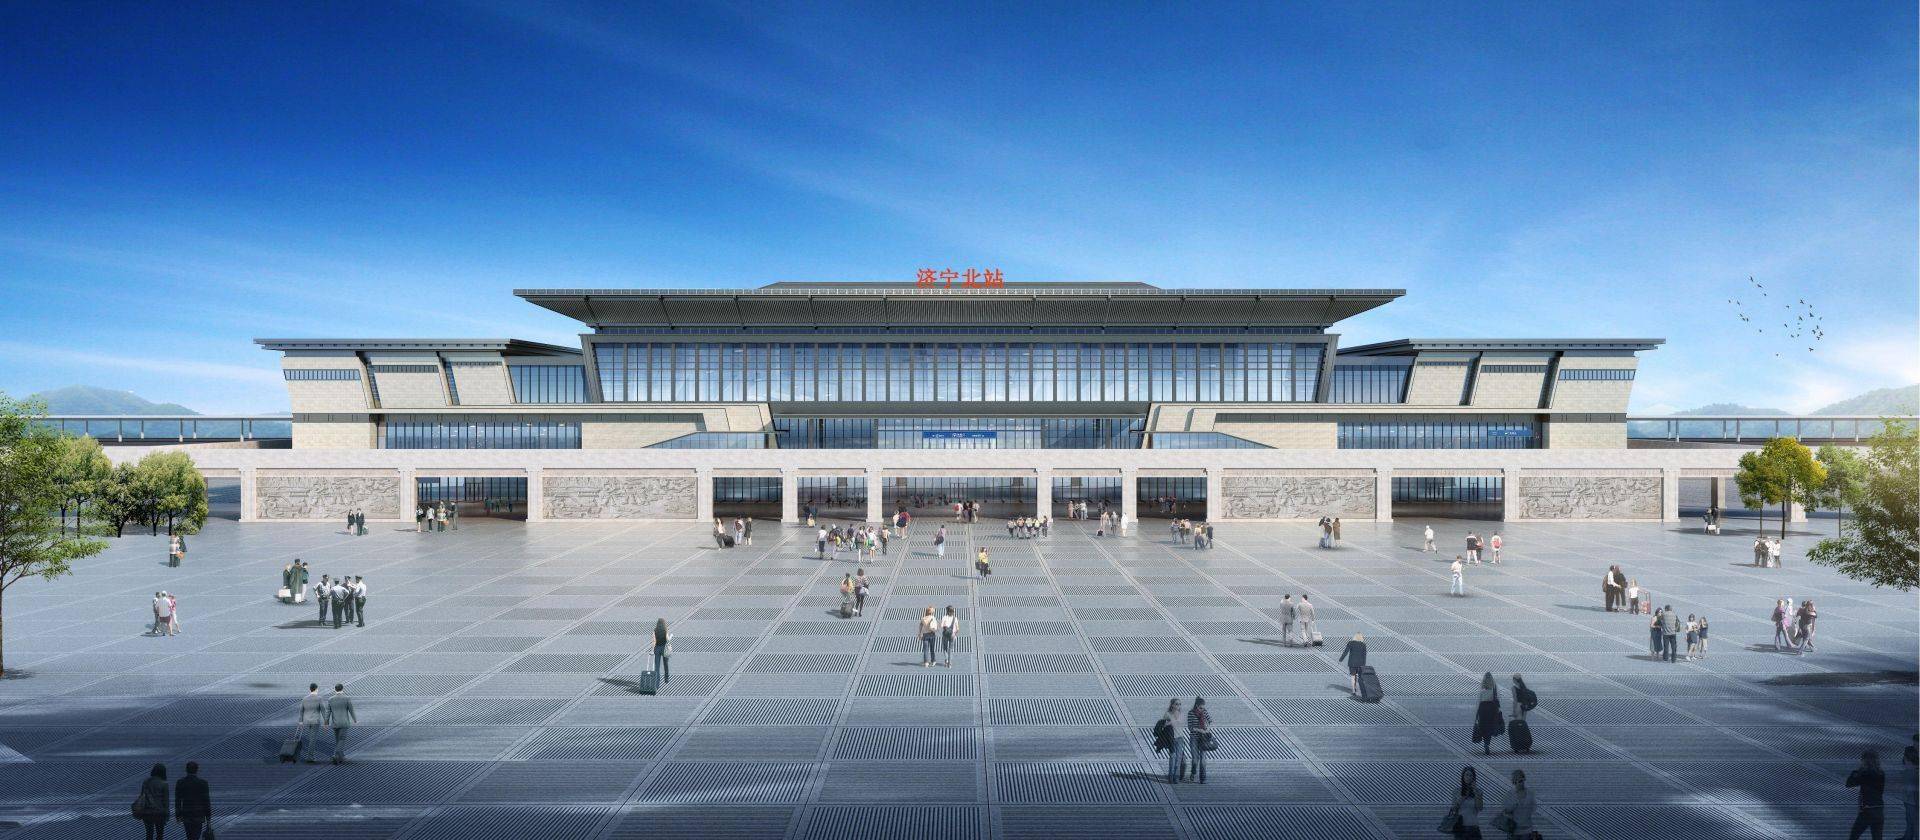 预计2021年底投入使用!鲁南高铁济宁北站正式开工